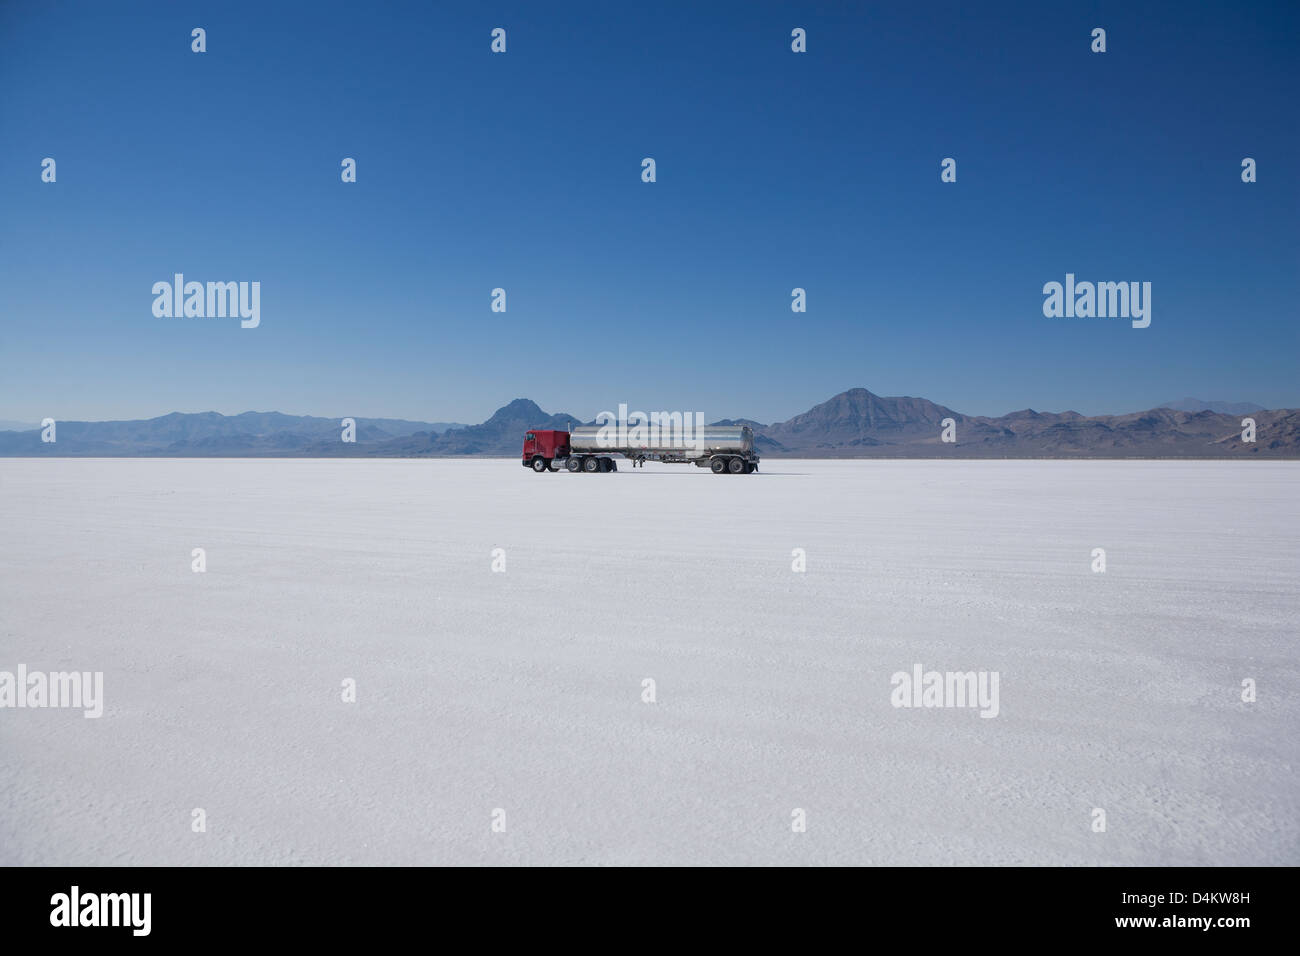 Truck driving in desert landscape Stock Photo